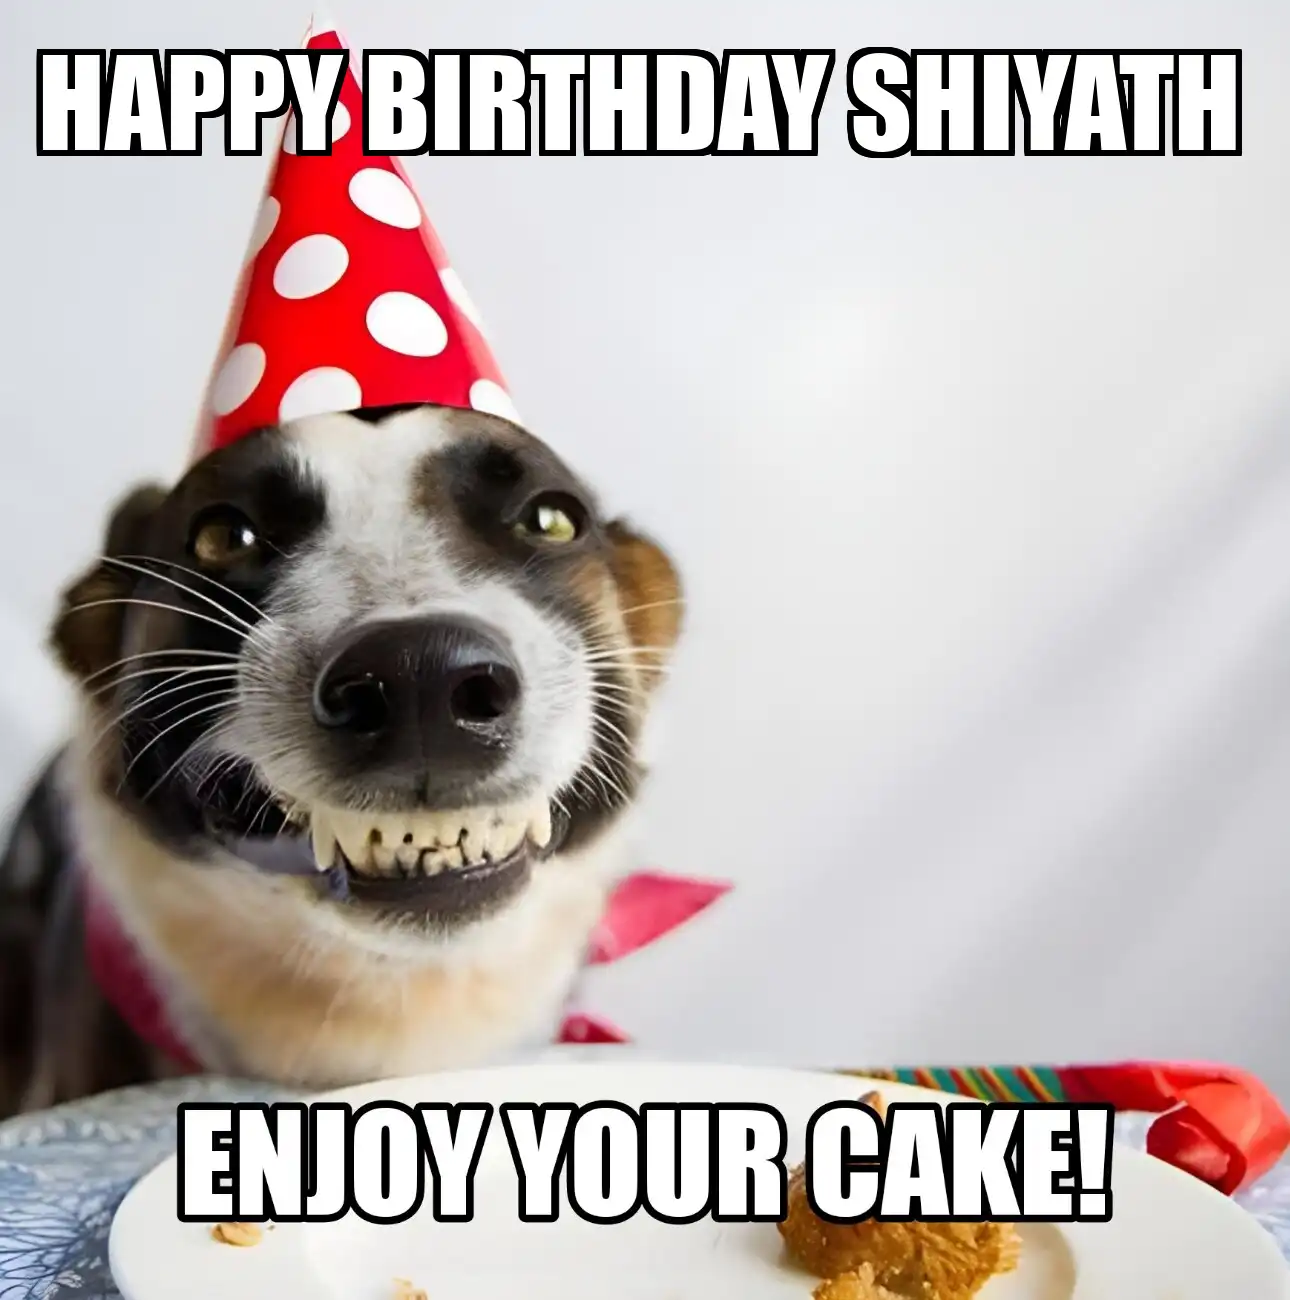 Happy Birthday Shiyath Enjoy Your Cake Dog Meme